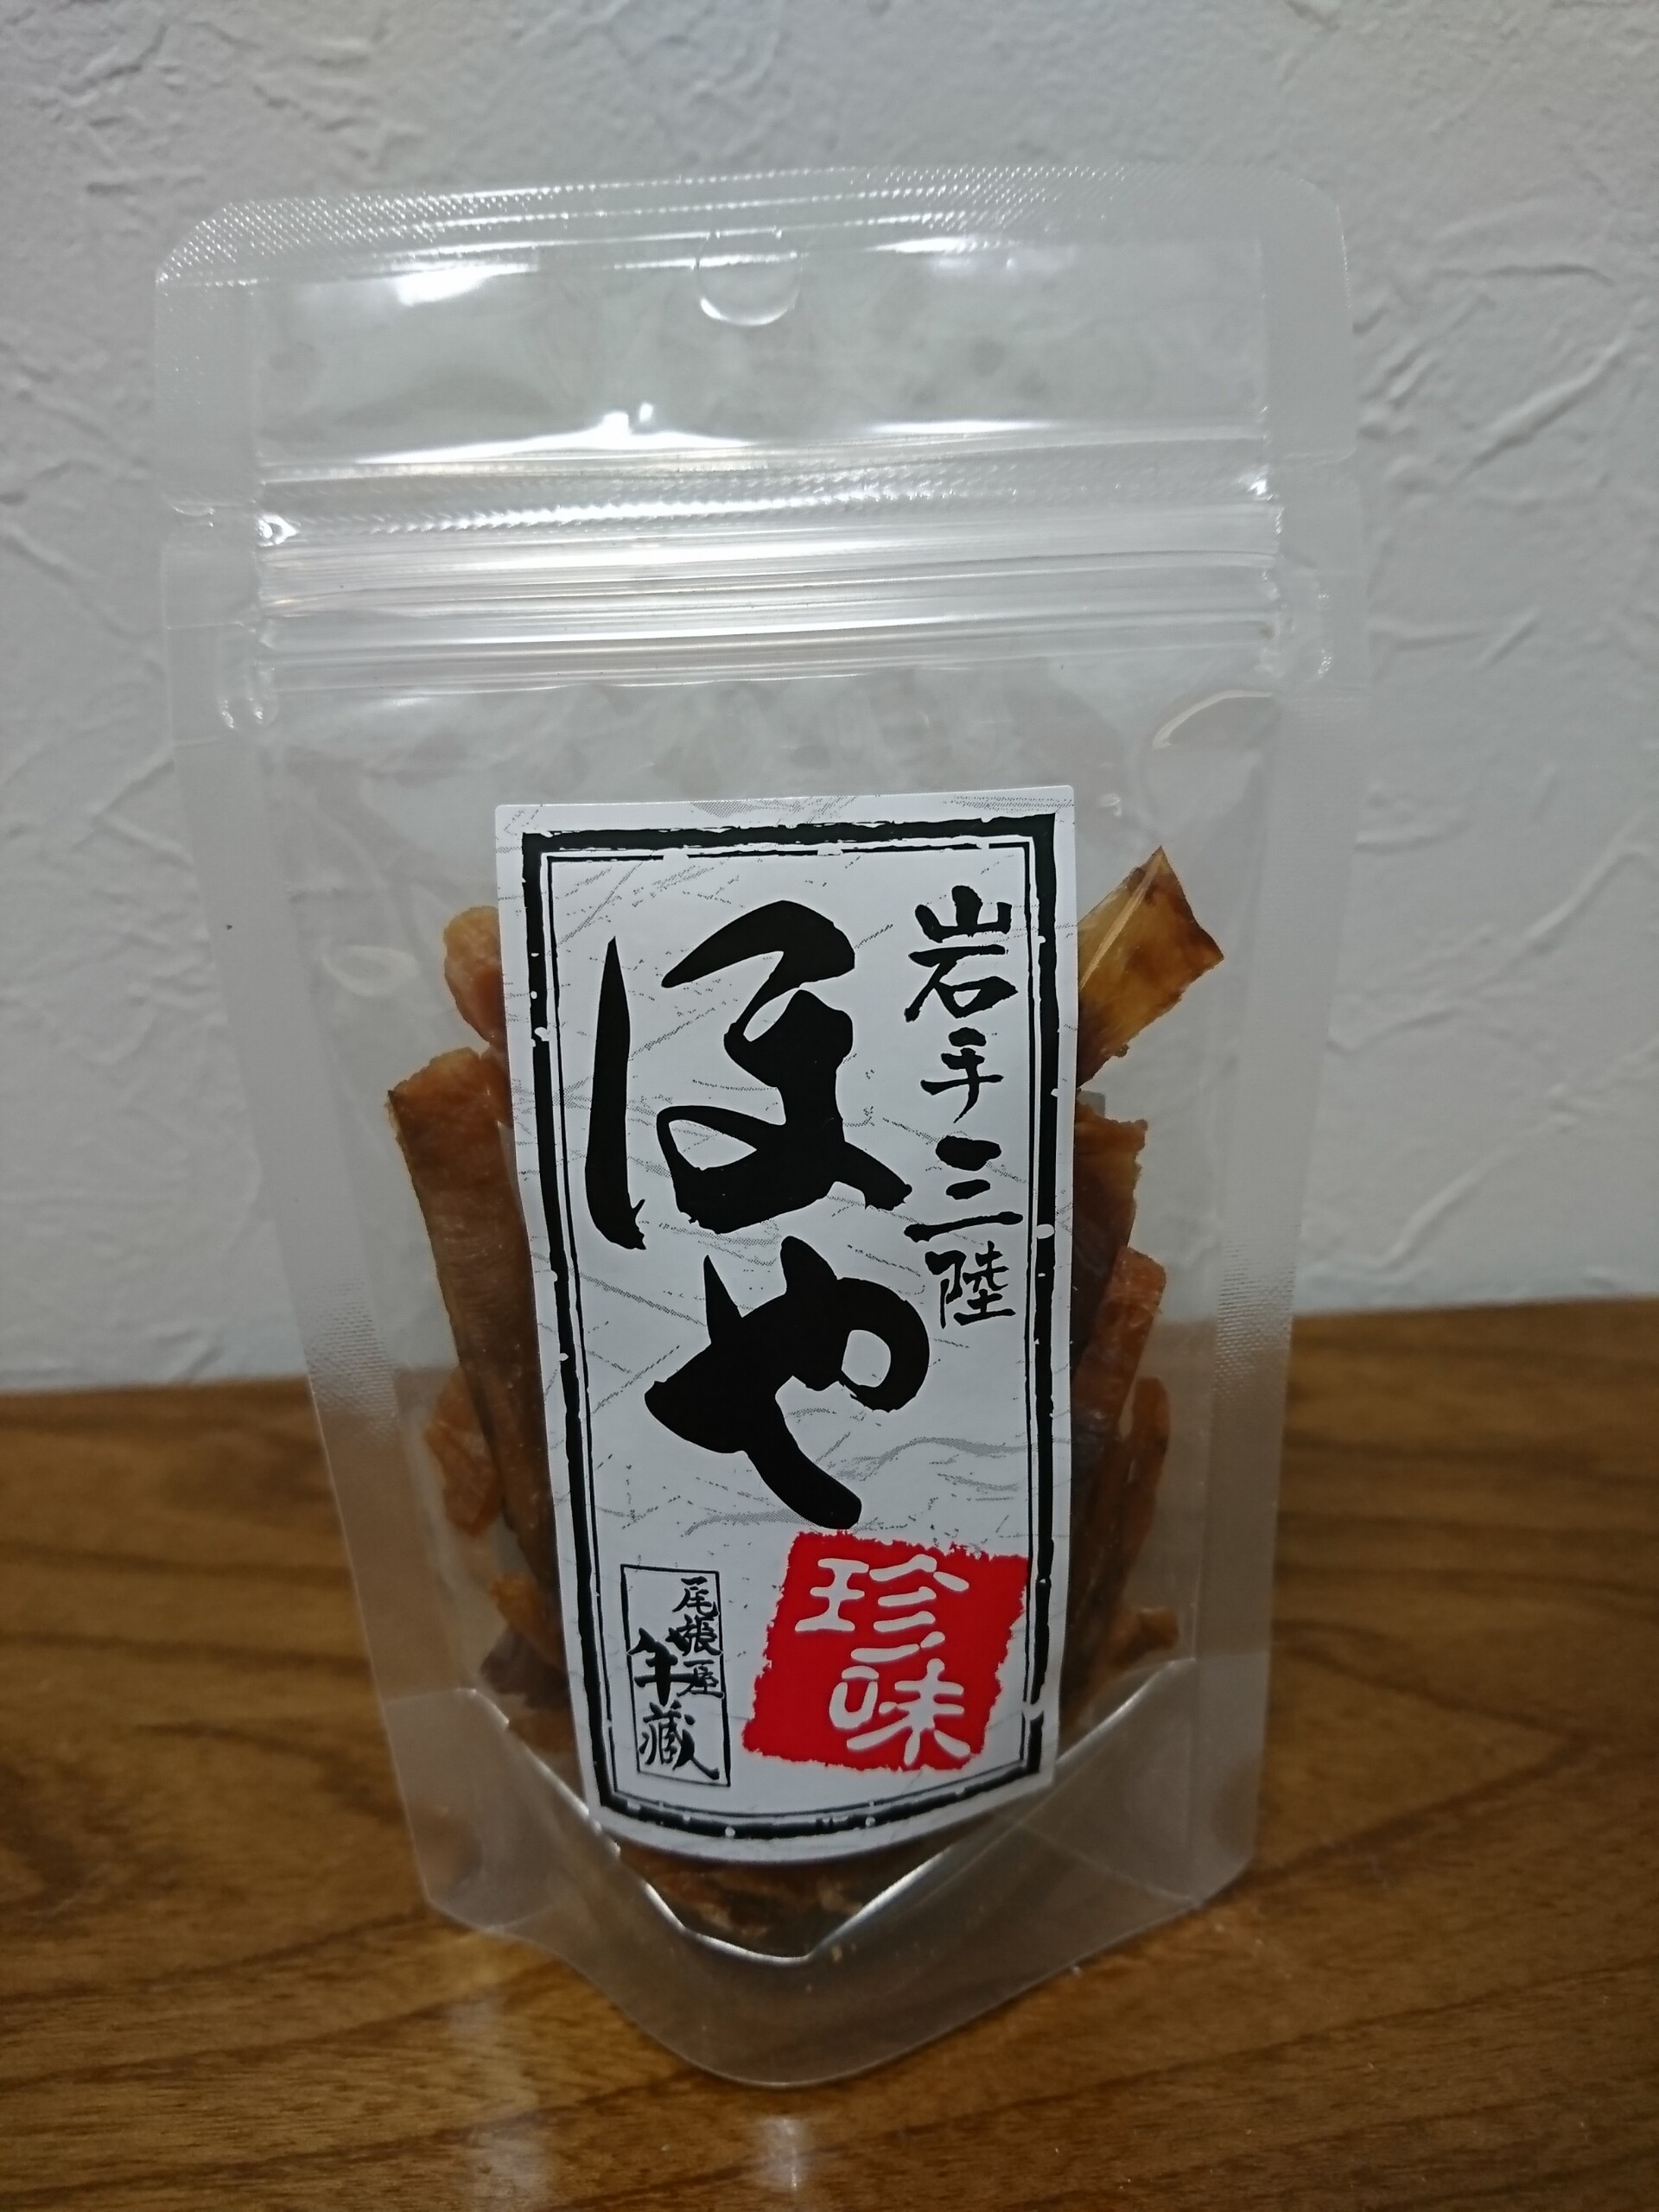 人気の盛岡の酒 Akabuと肴はホヤの干物 丹醸 スペペ 飲料マニアと雑学帝王